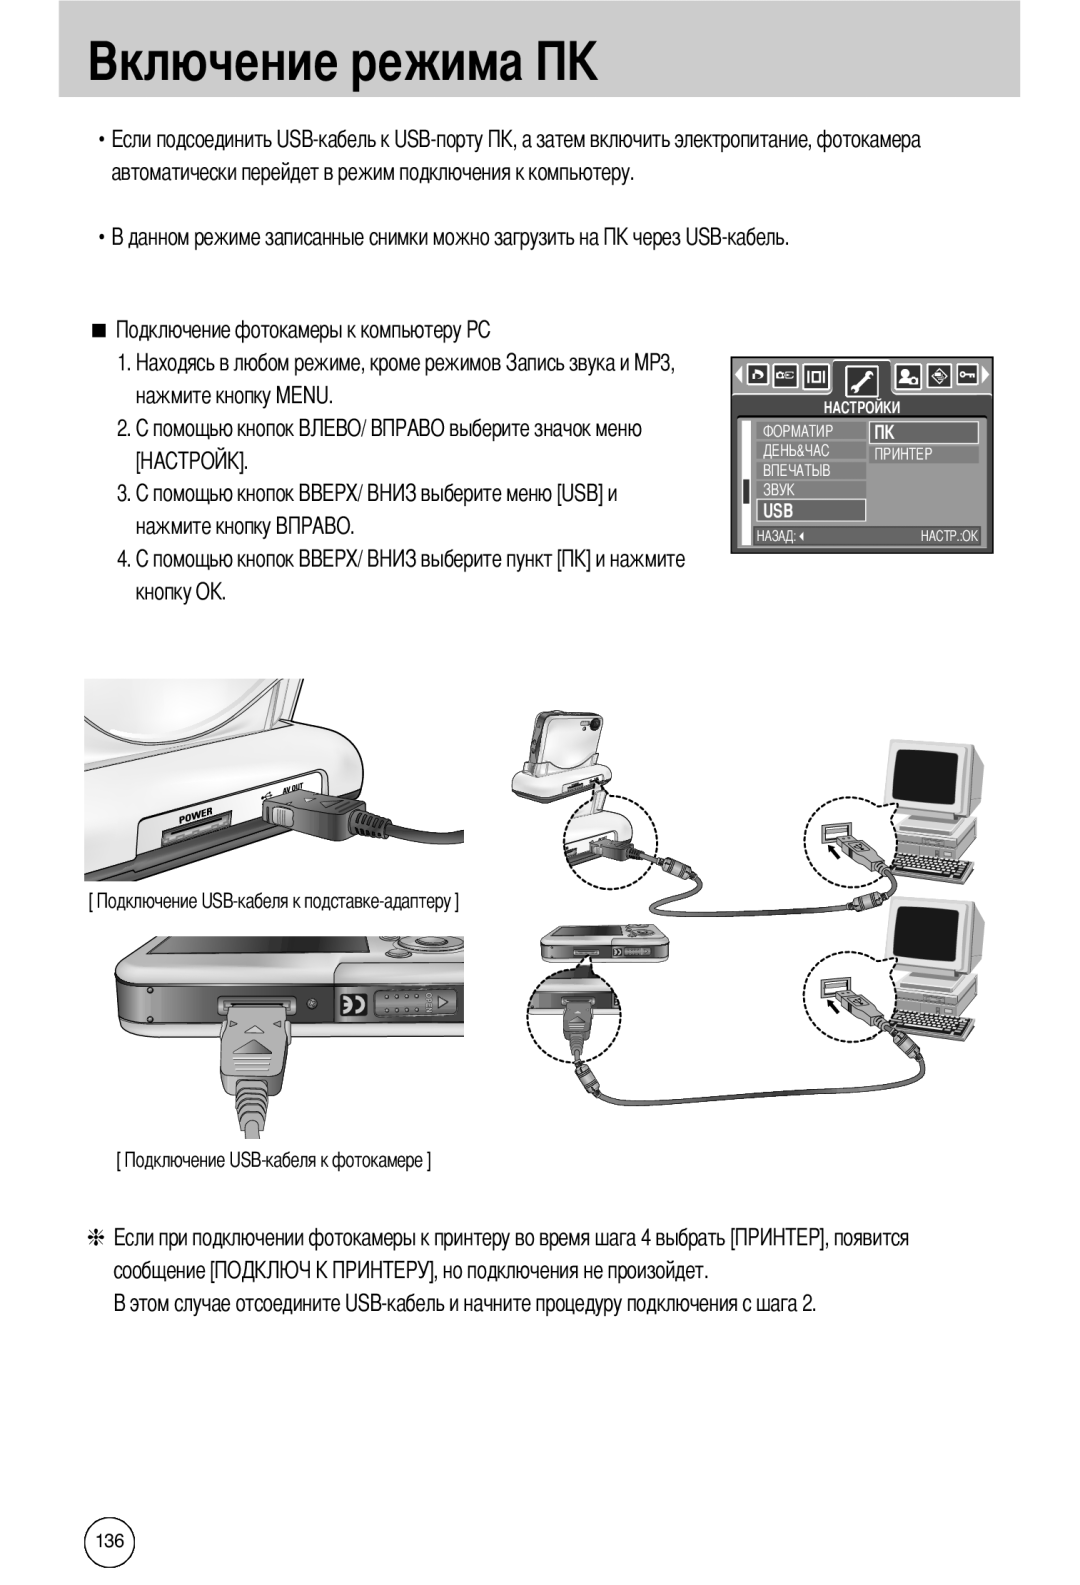 Samsung EC-I50ZZSBA/FR manual нажмите кнопку MENU, кнопку OK, сообщение, данном режиме записанные снимки можно загрузить на 